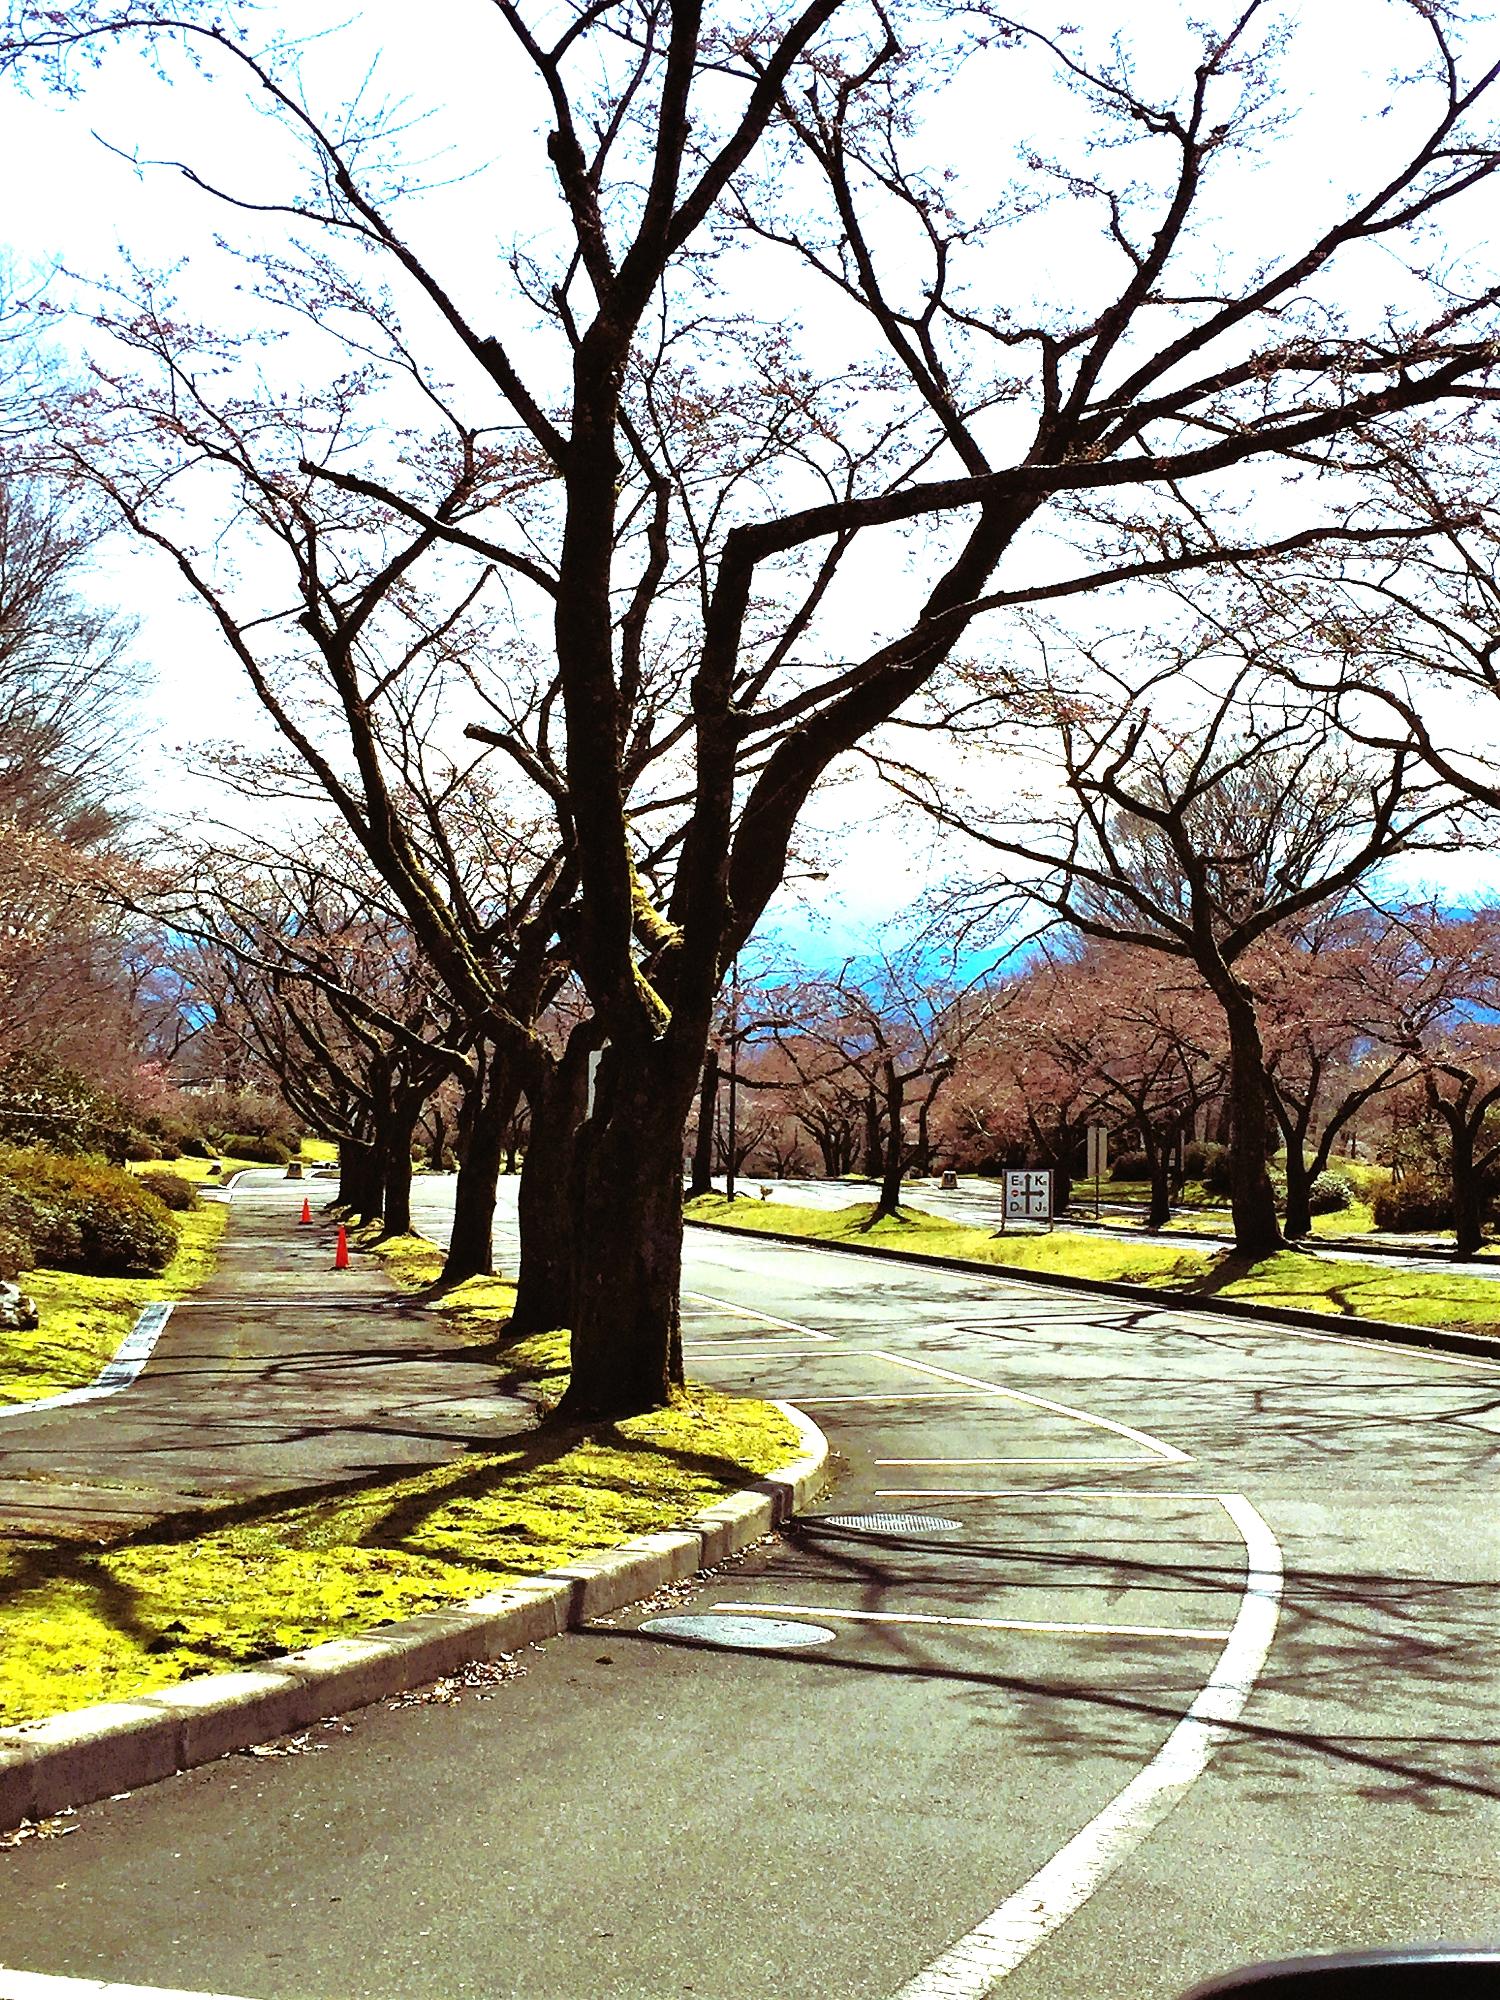 道路脇に駐車スペースがあるので愛車と桜を一緒に撮影できます。